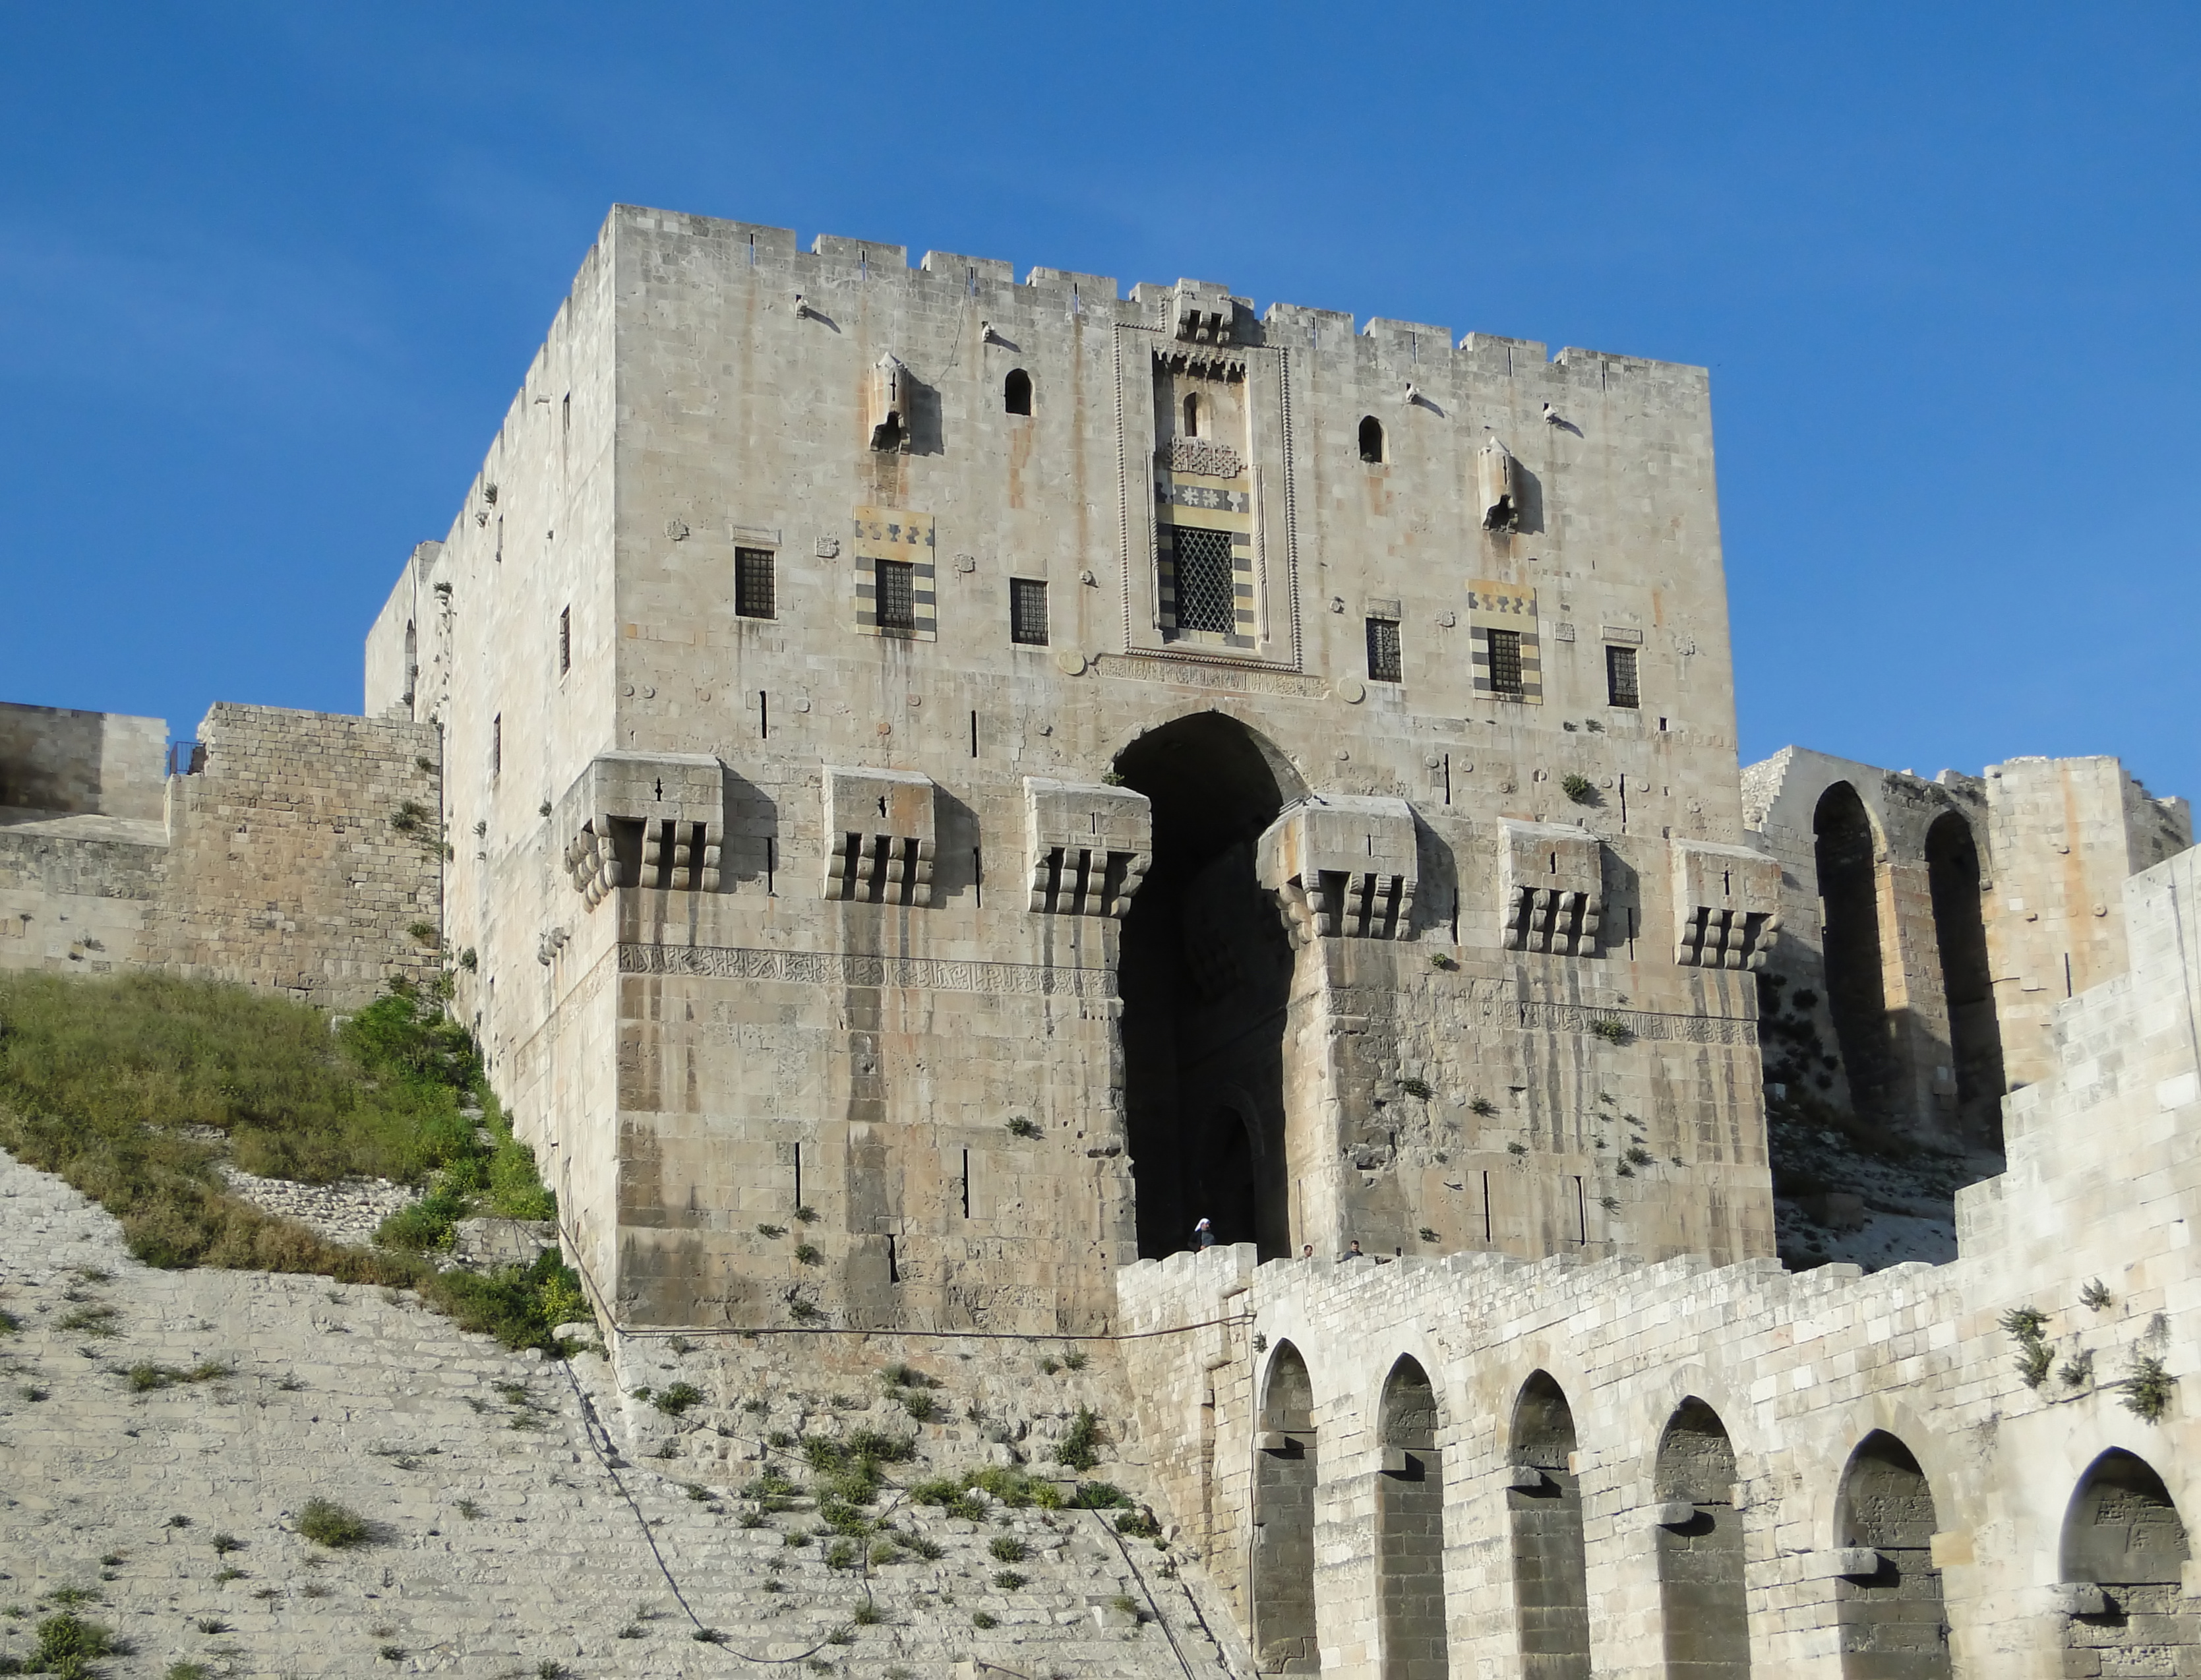 Aleppo Citadel 06 - Inner gate